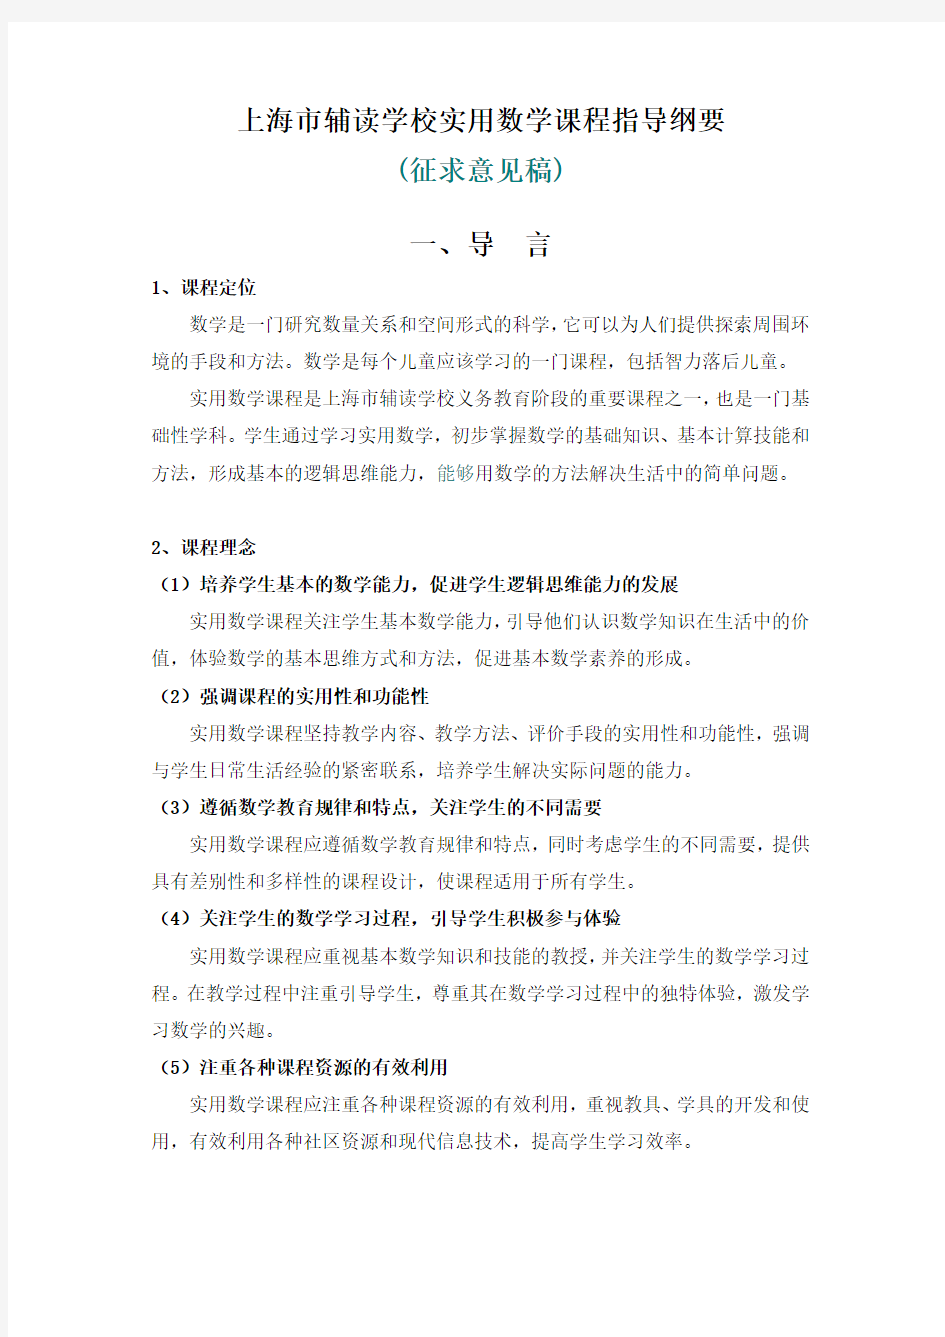 上海市辅读学校实用数学课程指导纲要